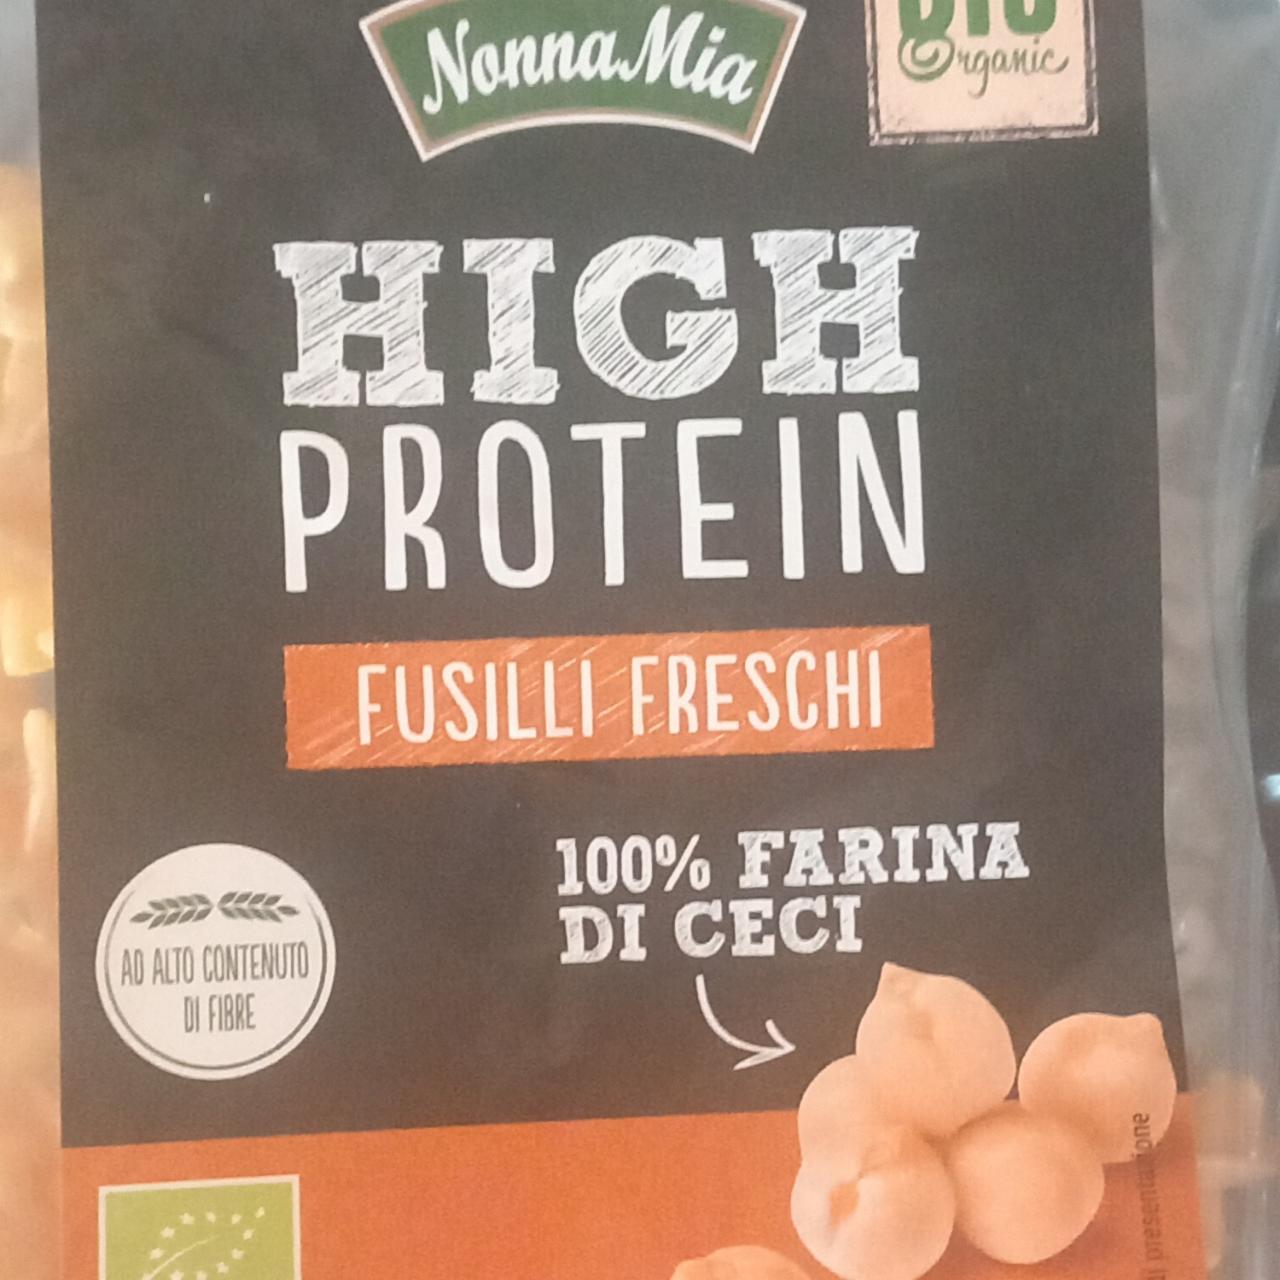 Fotografie - Bio High Protein Fusilli freschi 100% farina di ceci NonnaMia